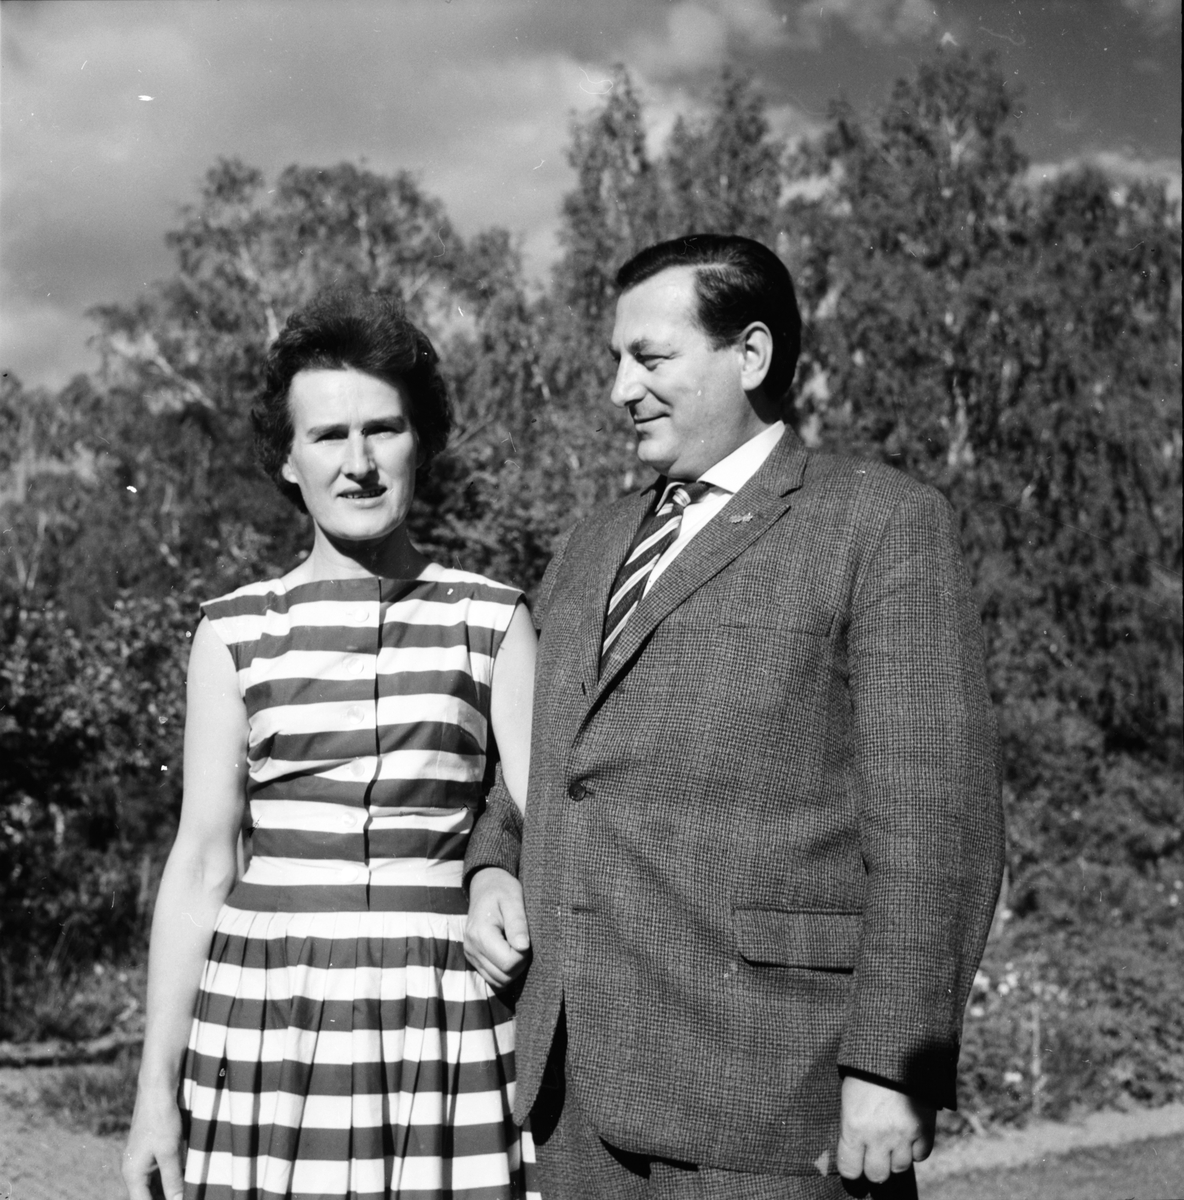 Gruvberget,
Utflykt,
Tyskt par,
1959